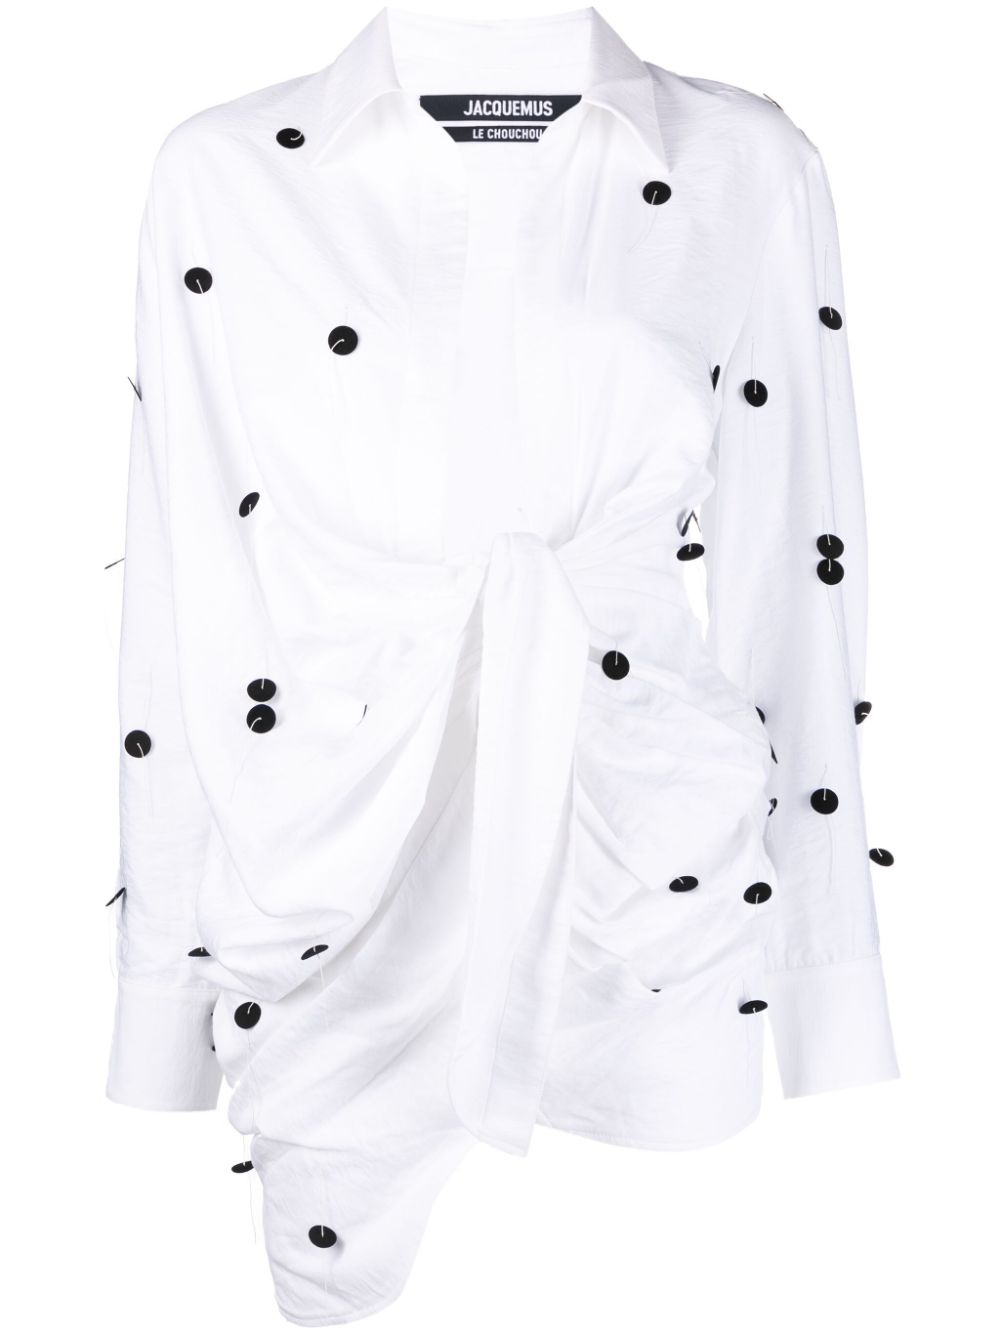 JACQUEMUS BAHIA Embroidered Wrap Minidress - White/Black